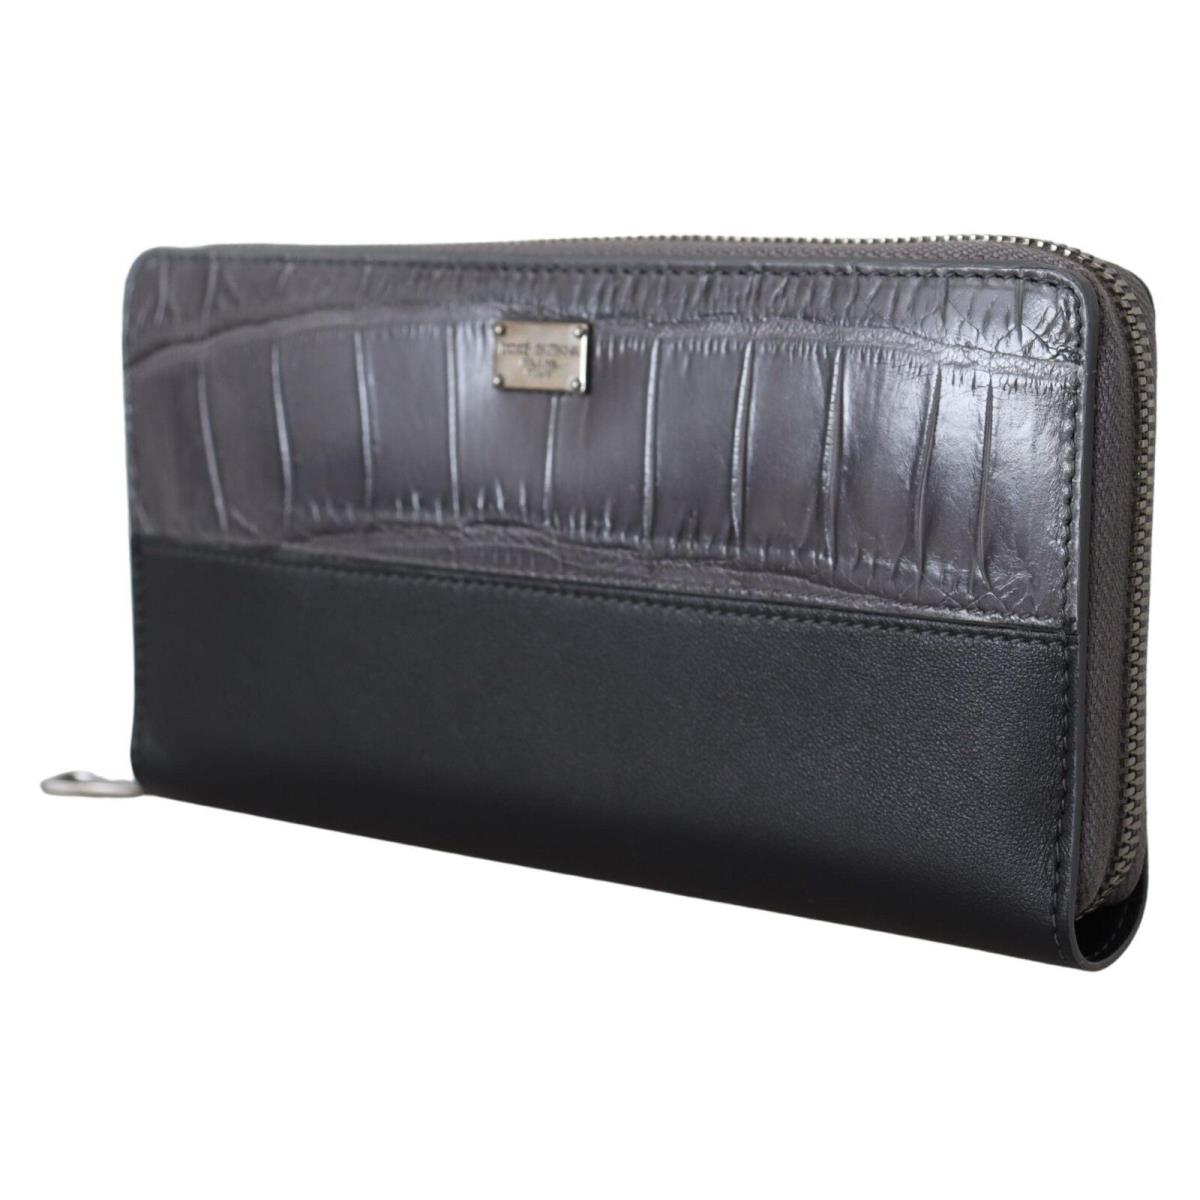 Dolce Gabbana Black Zip Around Continental Clutch Leather Wallet